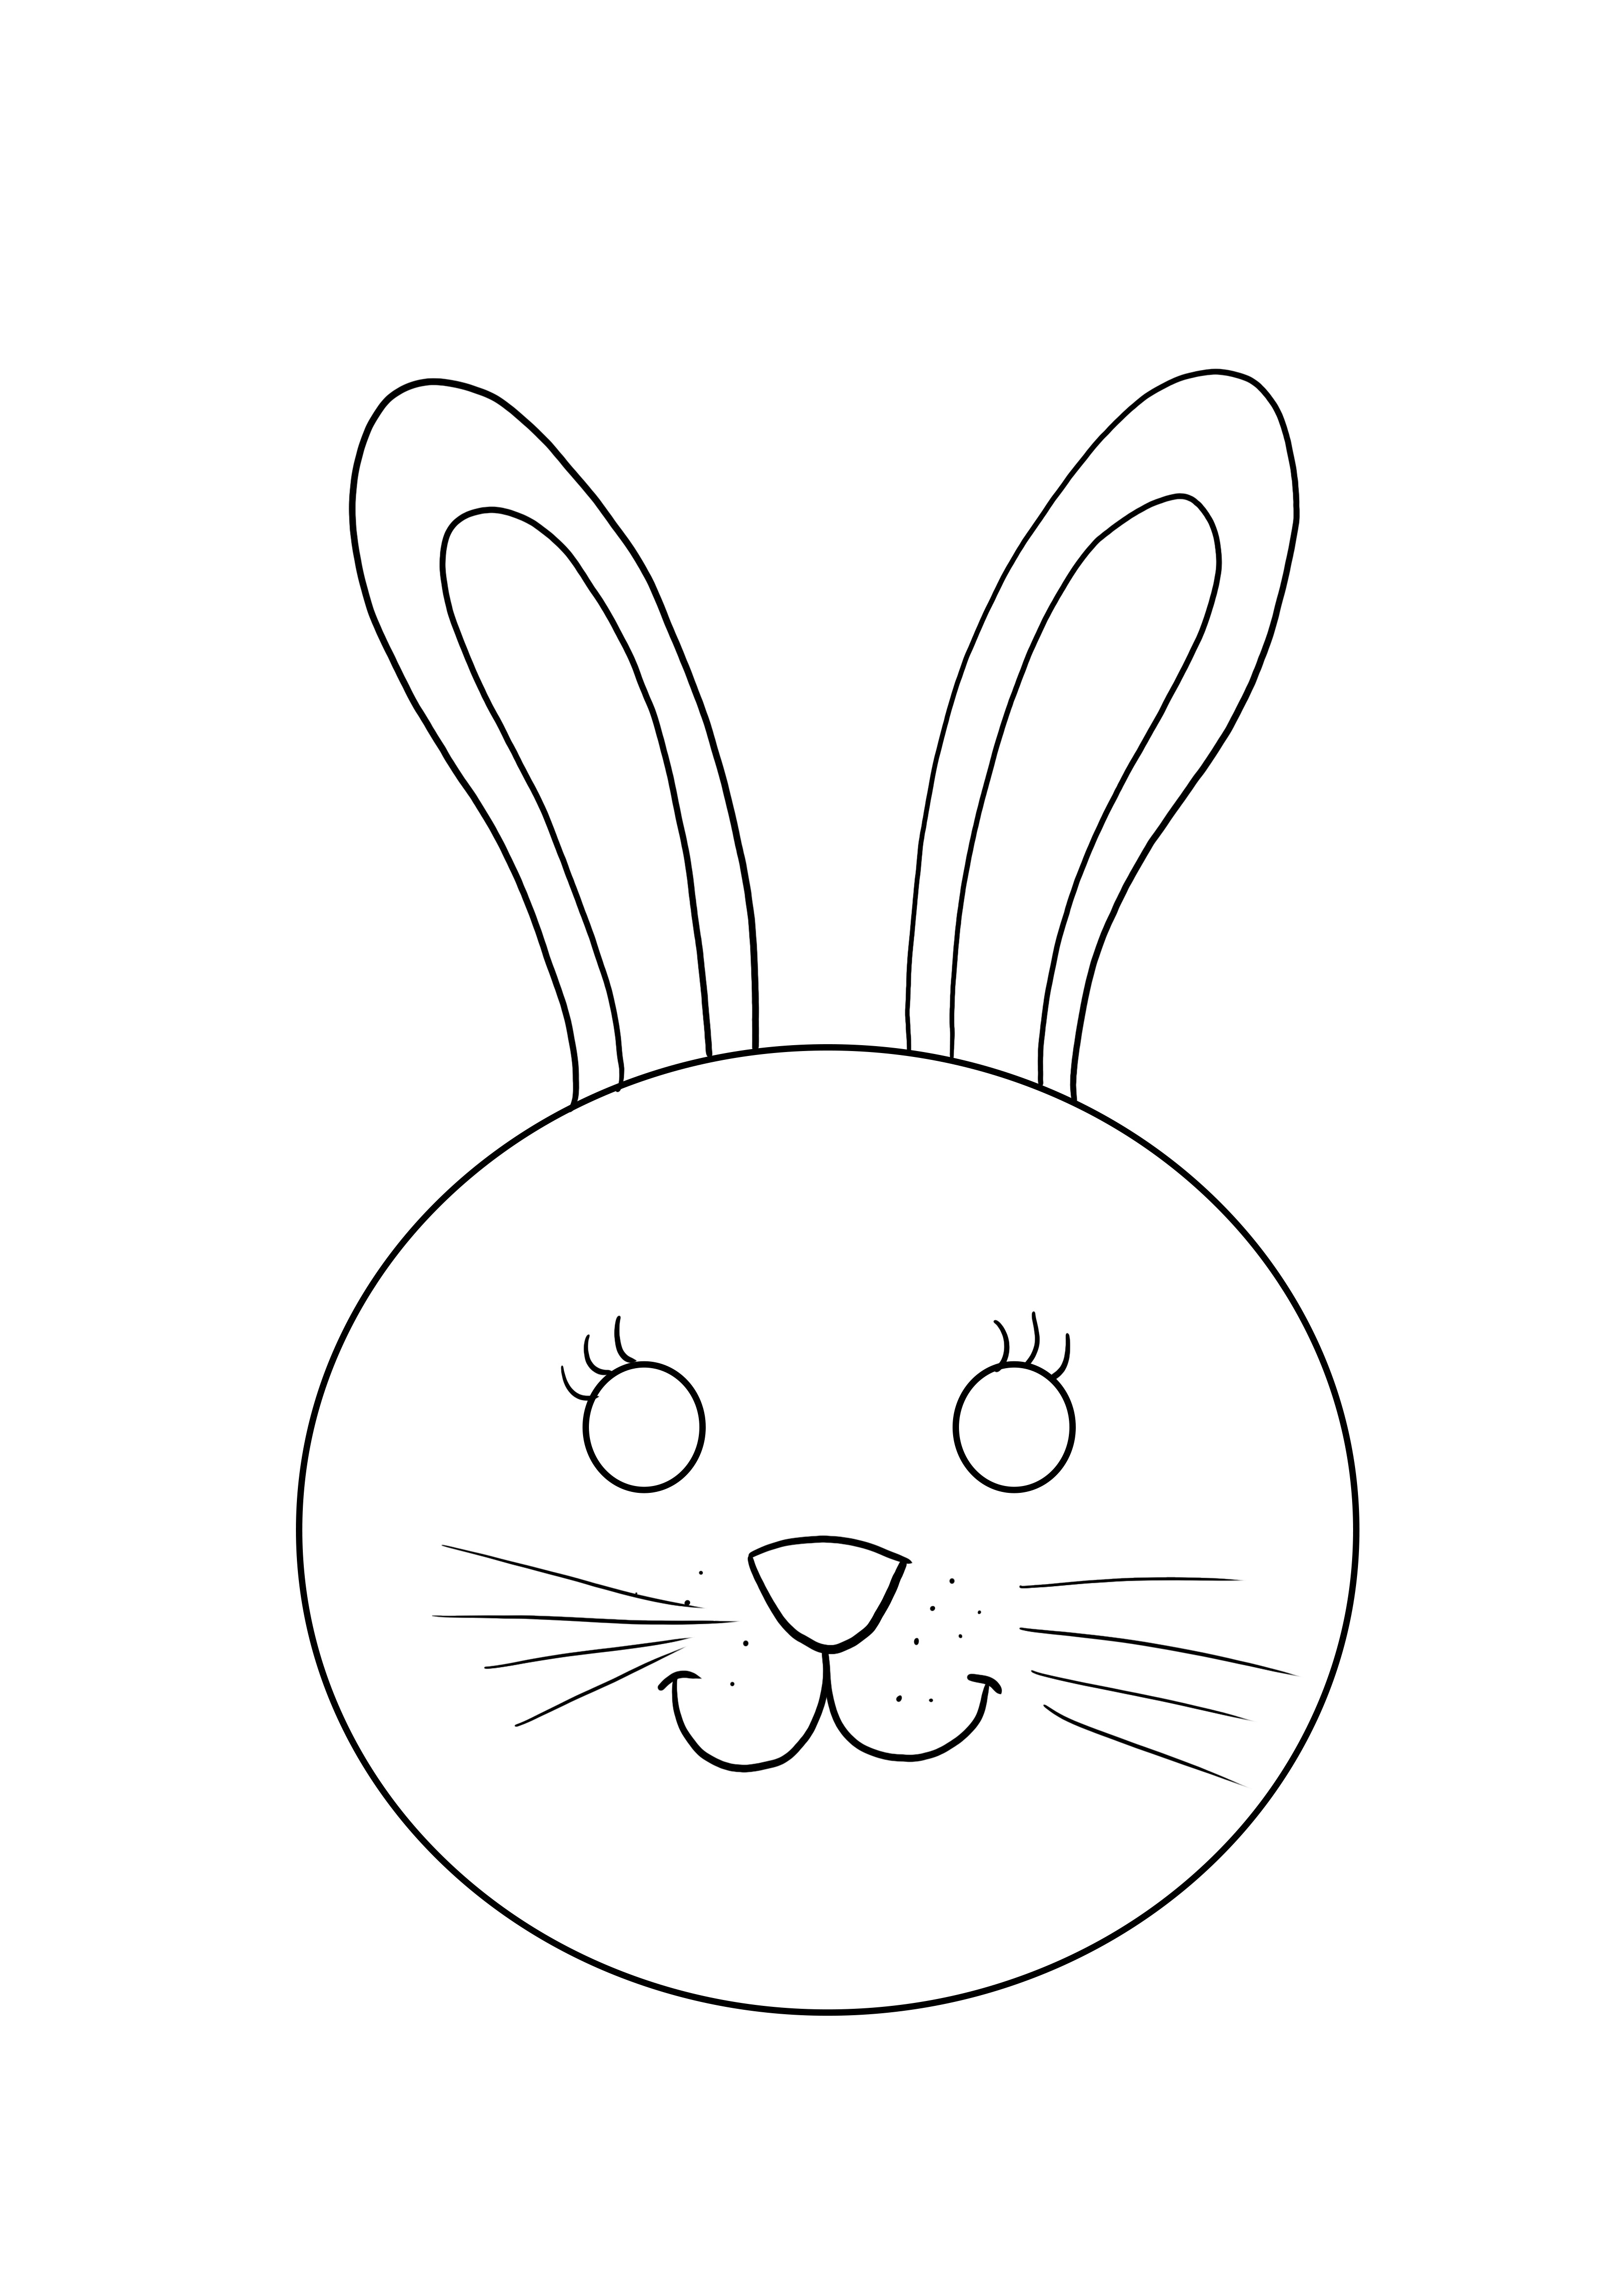 Ücretsiz yazdırmak ve renklendirmek için tavşan maskesi